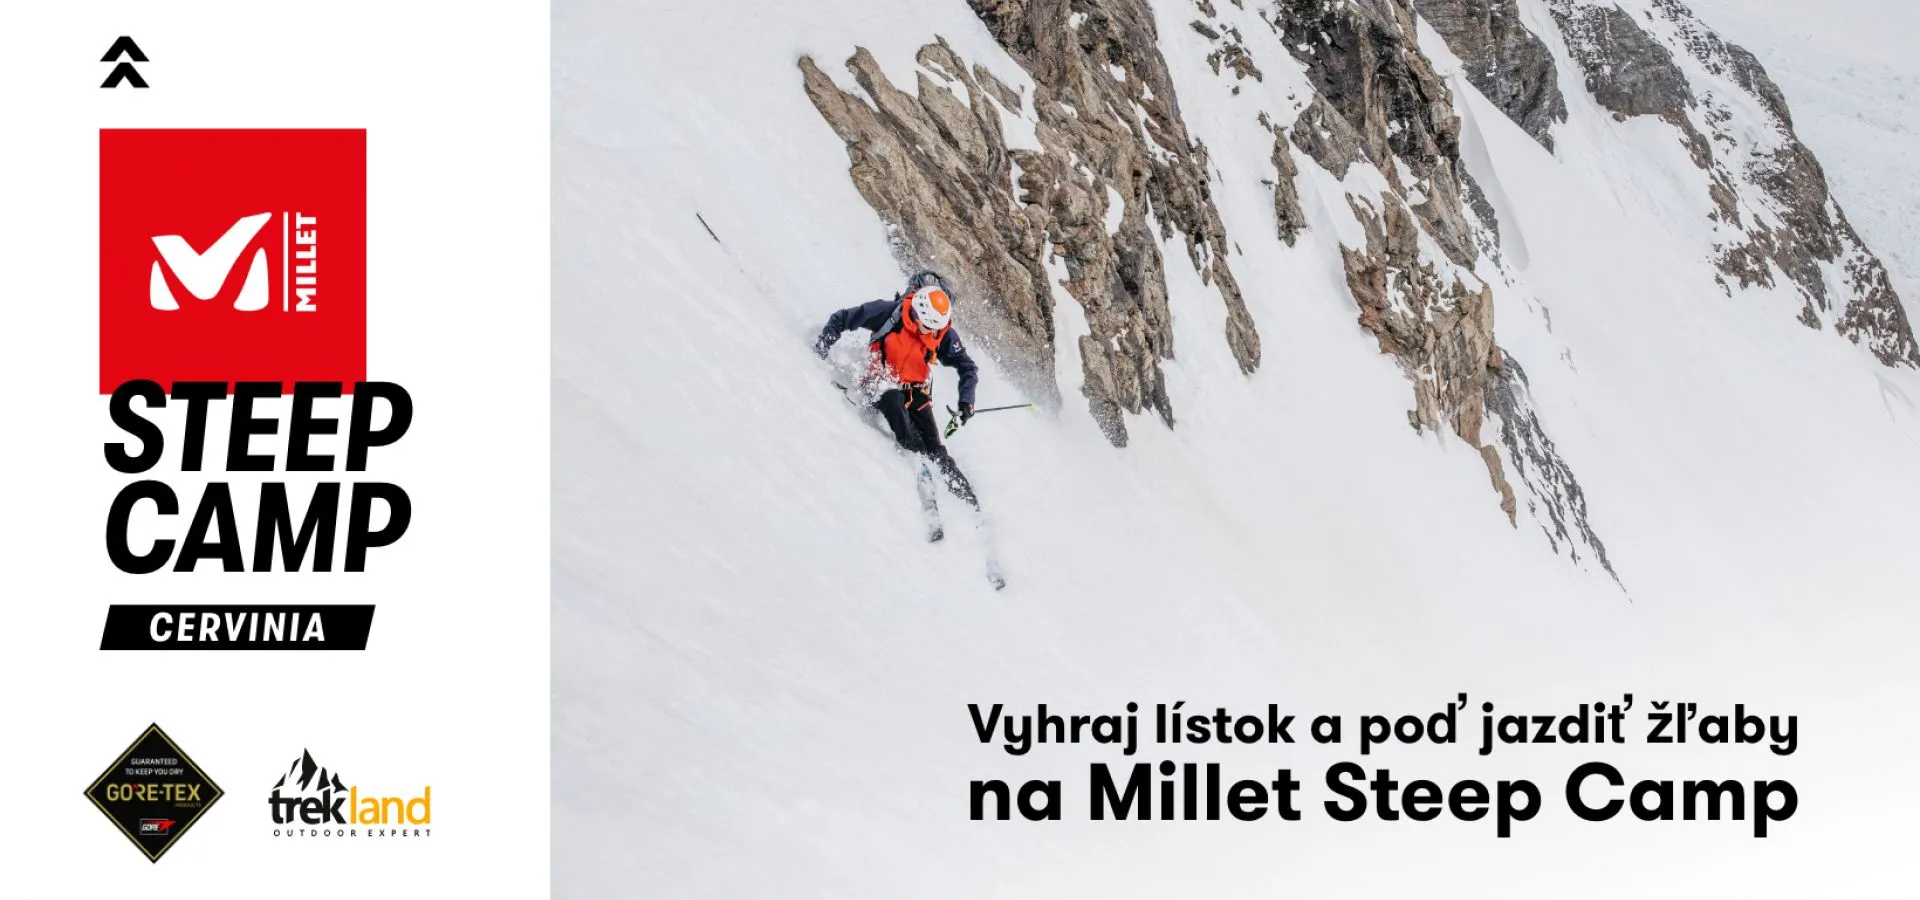 Súťaž Millet Steep Camp o lyžovačku v Cervinii